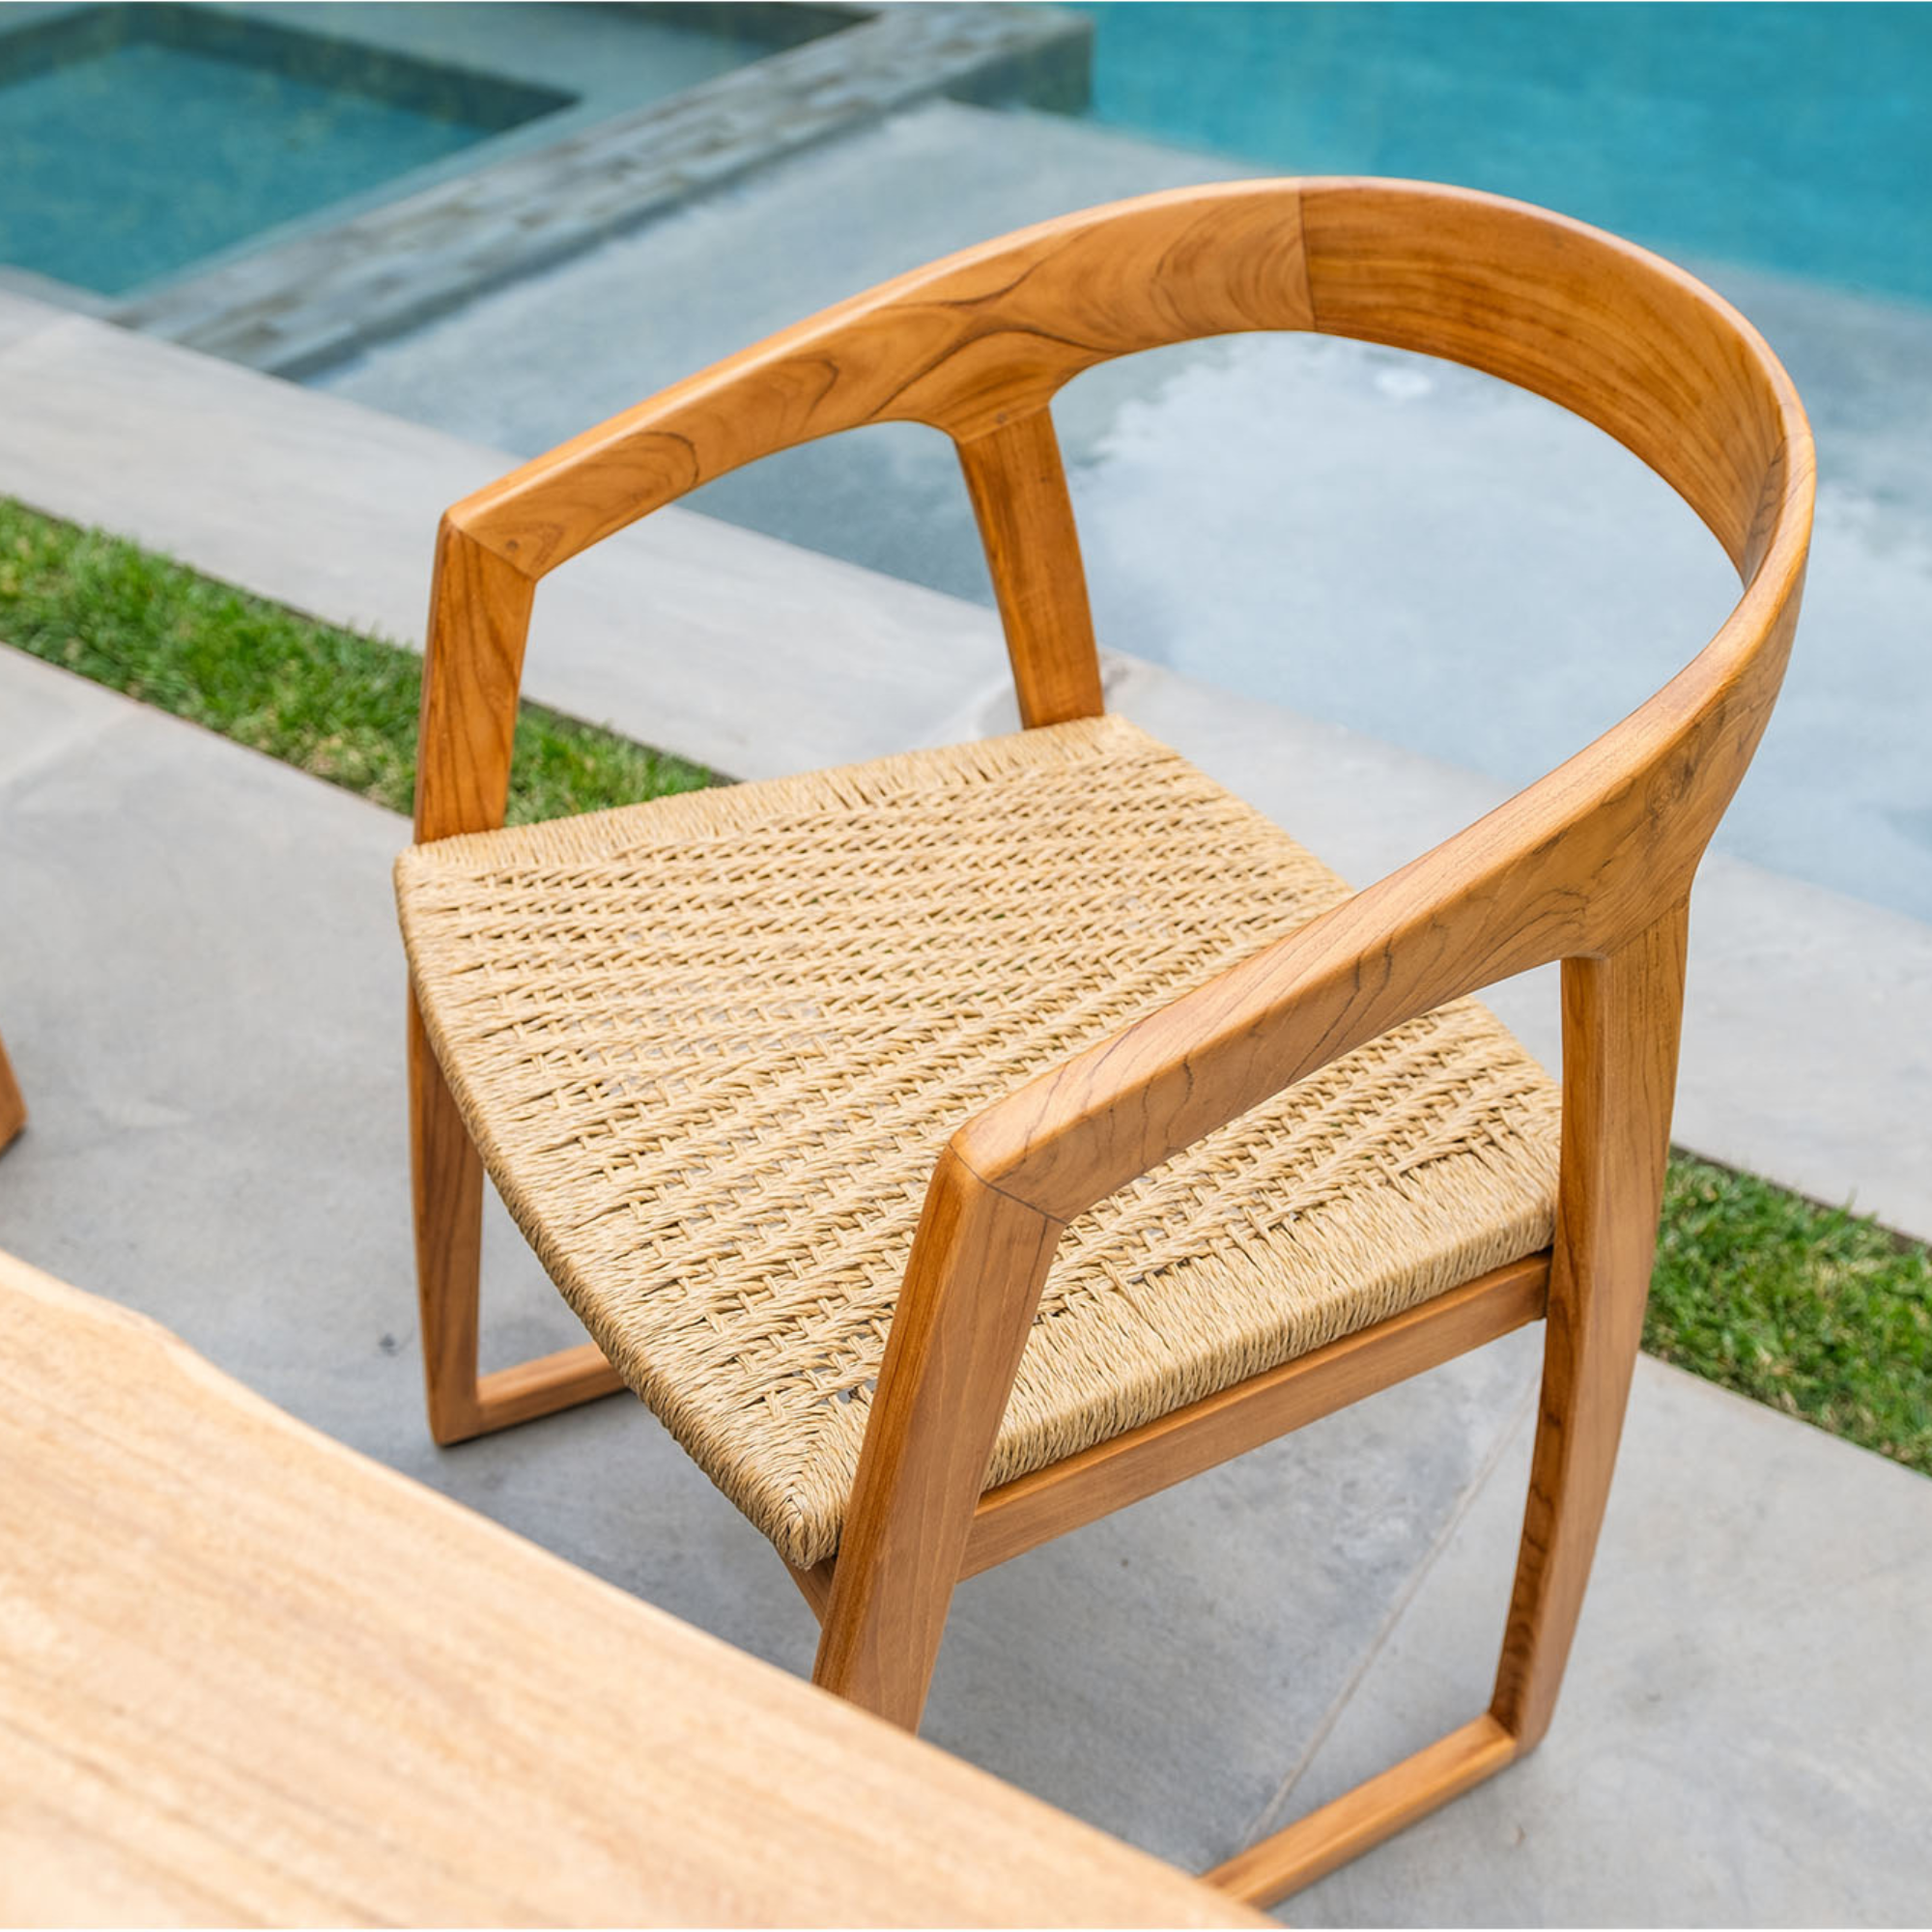 Ubud Natural Teak Indoor/Outdoor Dining Chair